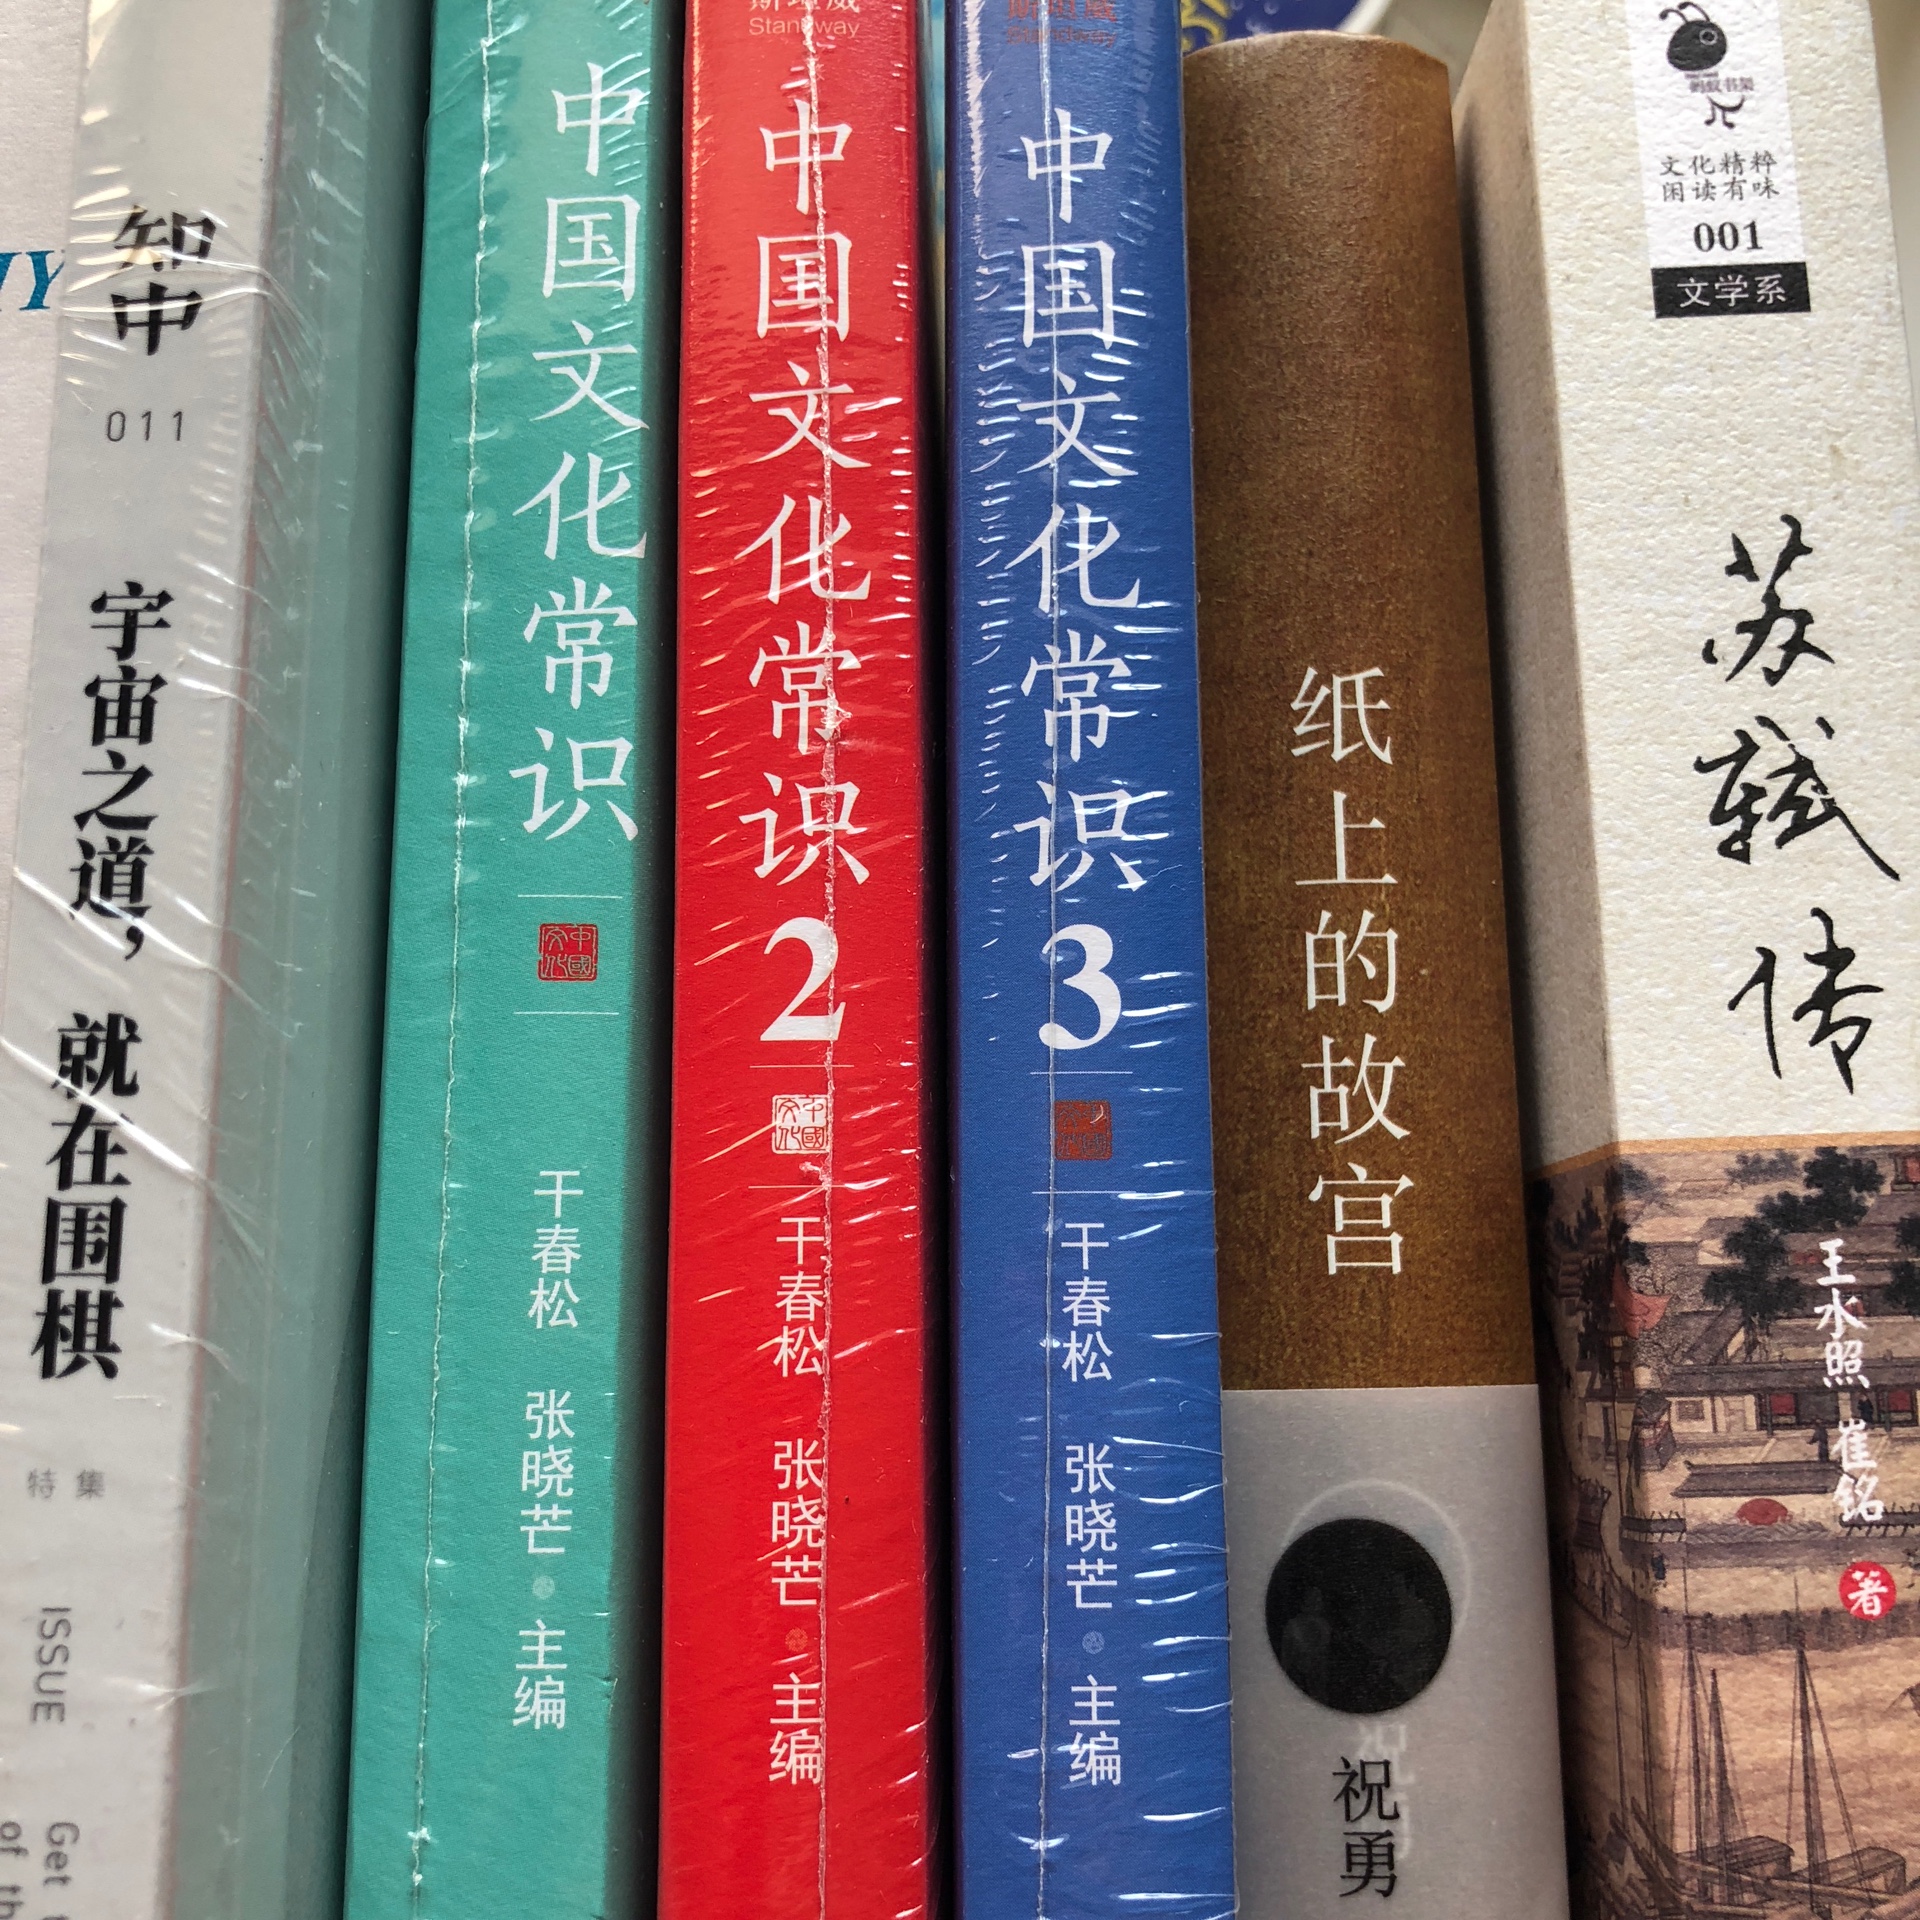 活动给力，长江文艺的这套文化散文不错，第二本《唐朝的驿站也买了》